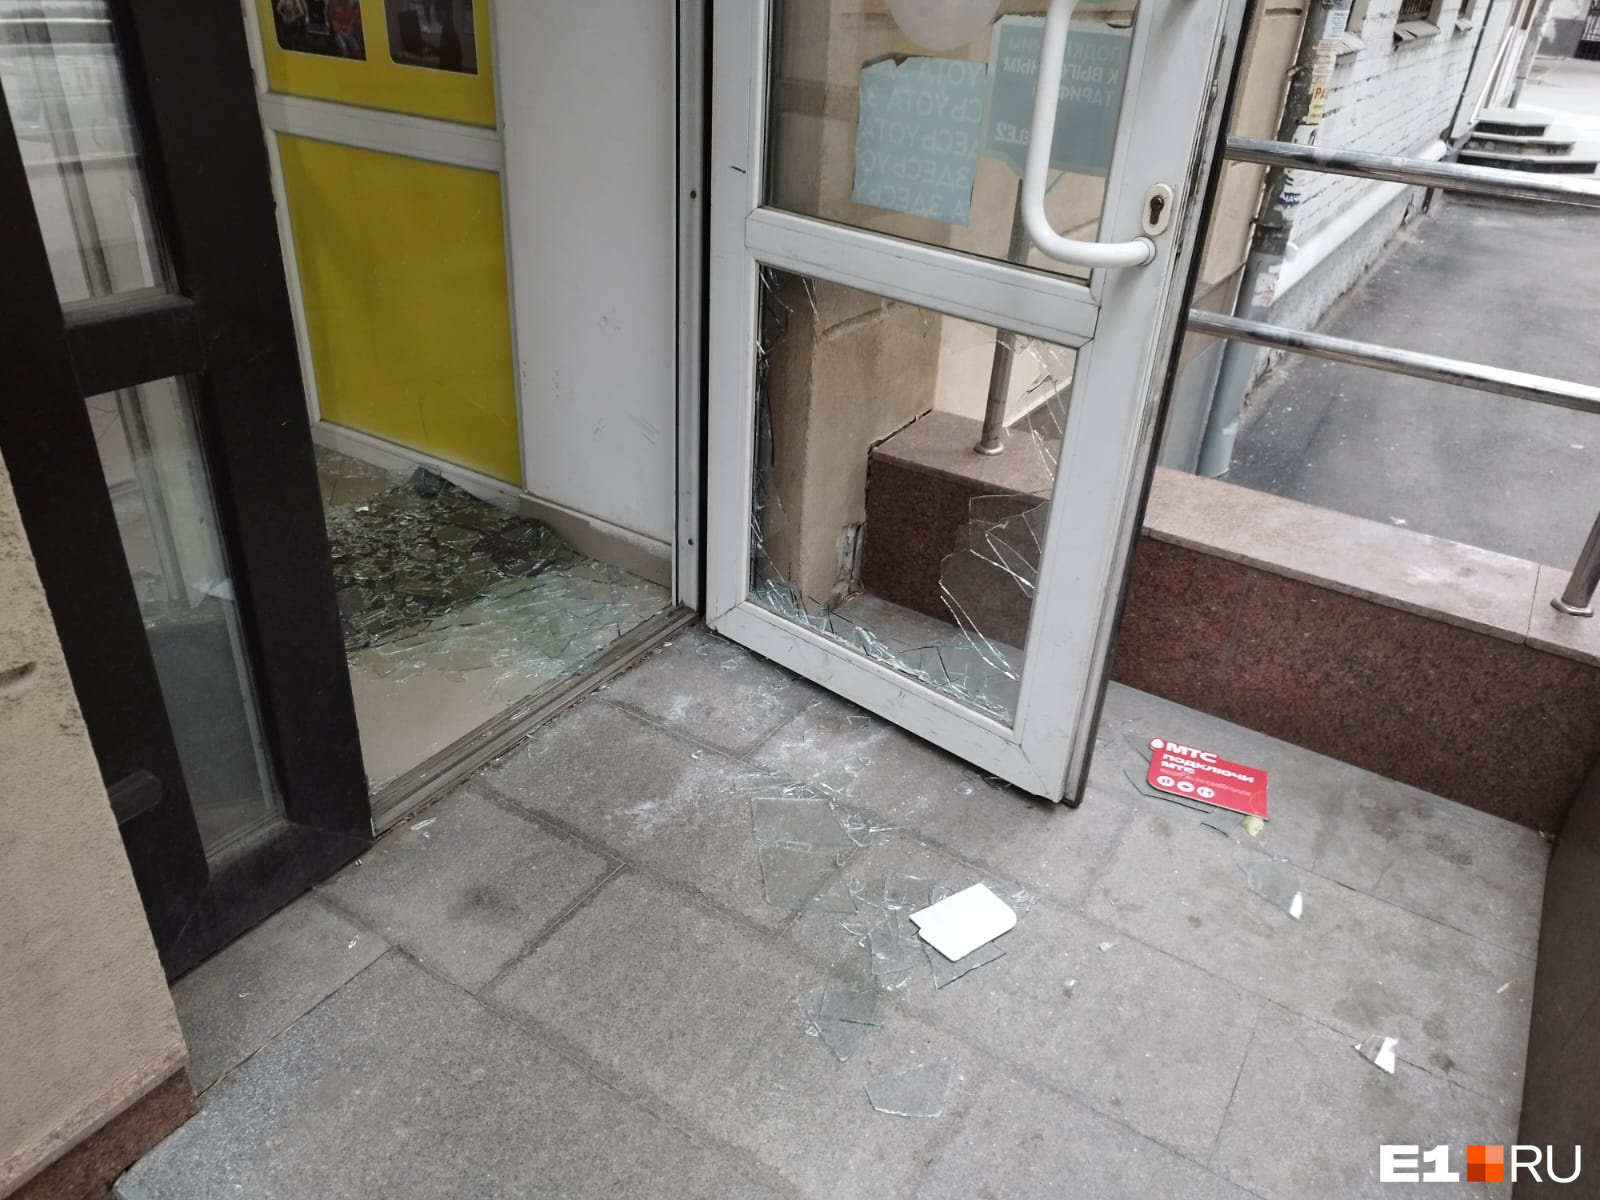 Кражи поставили на поток: в центре Екатеринбурга банда подростков под камерами обнесла очередной офис